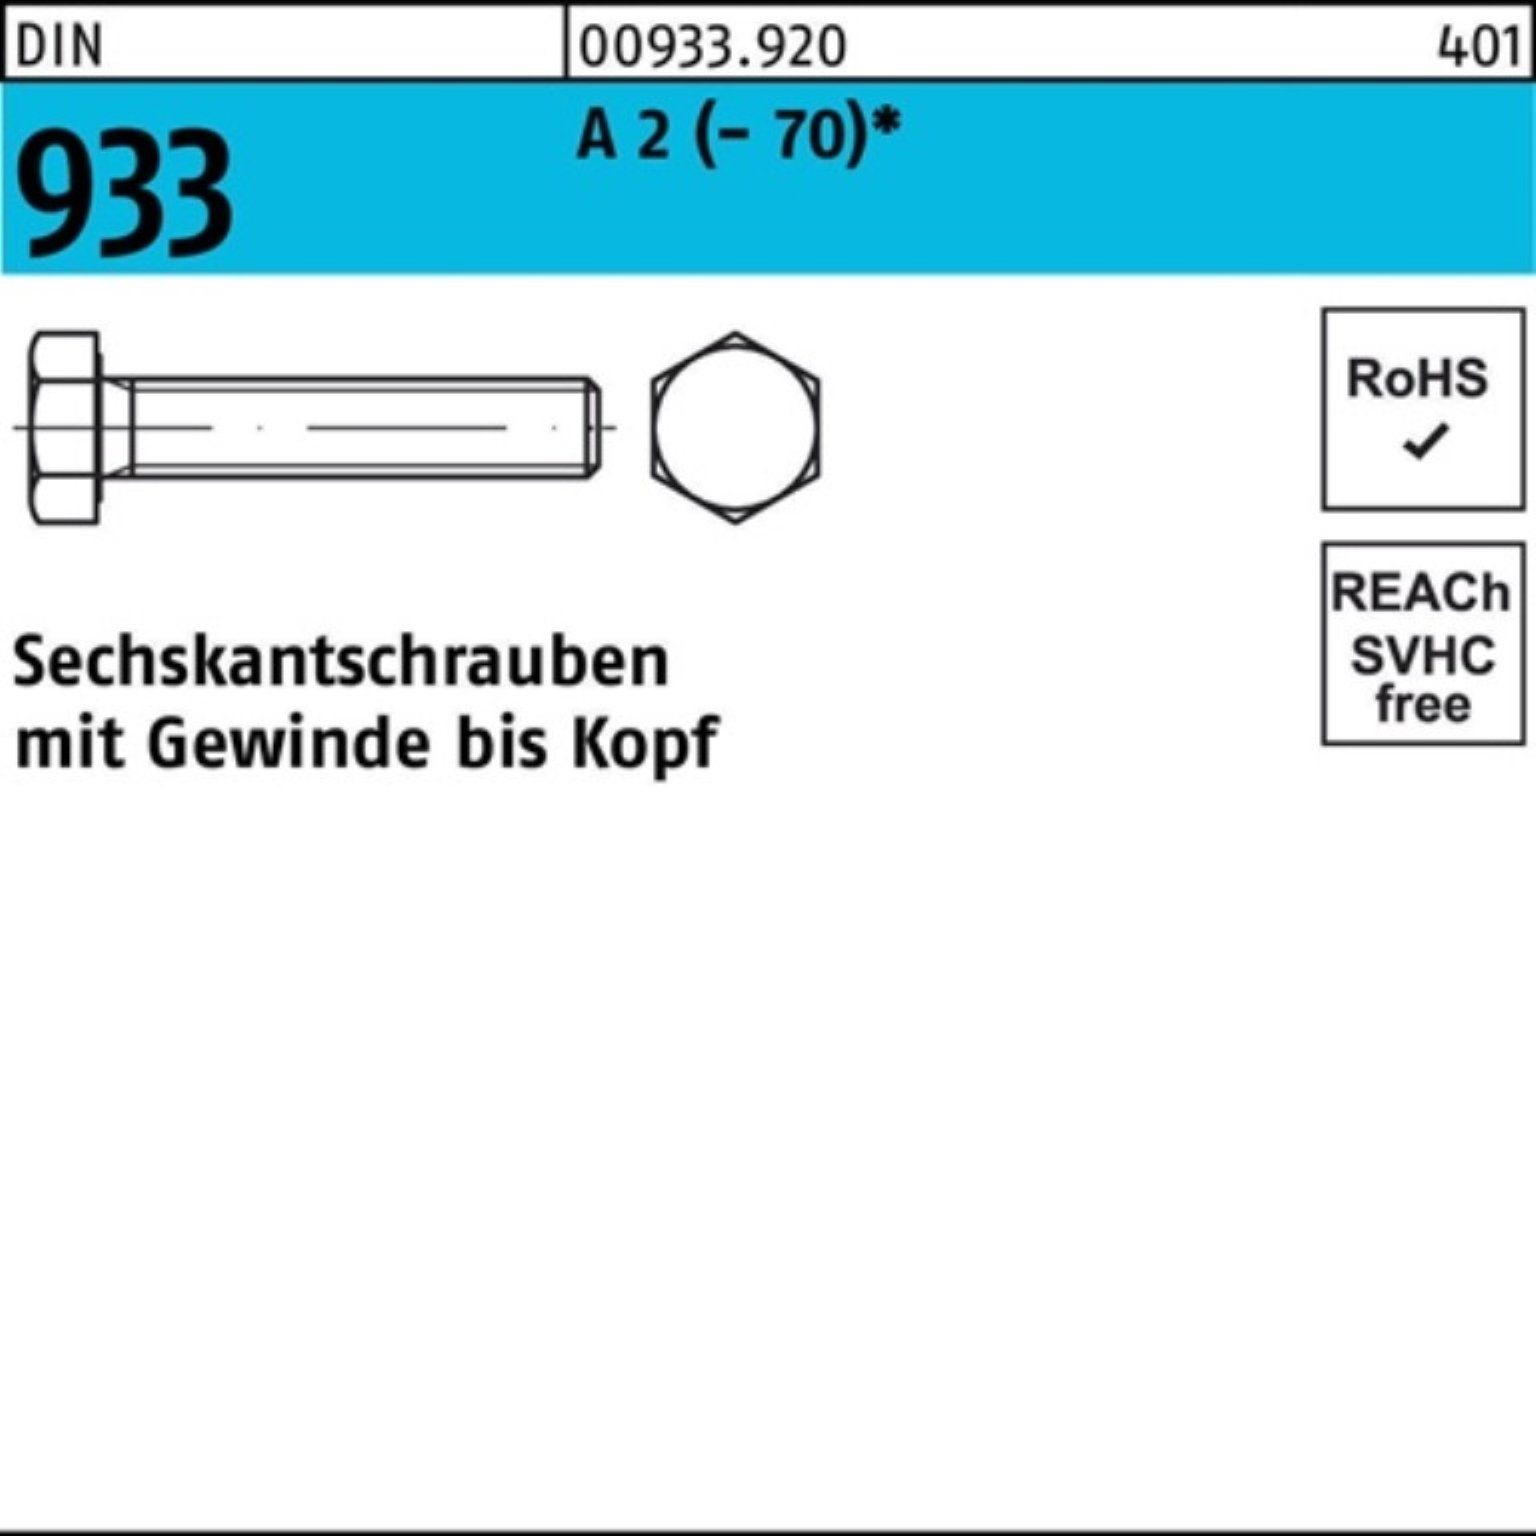 Reyher Sechskantschraube Sechskantschraube DIN Stück M36x VG 100er 90 Pack (70) DI 1 A 2 933